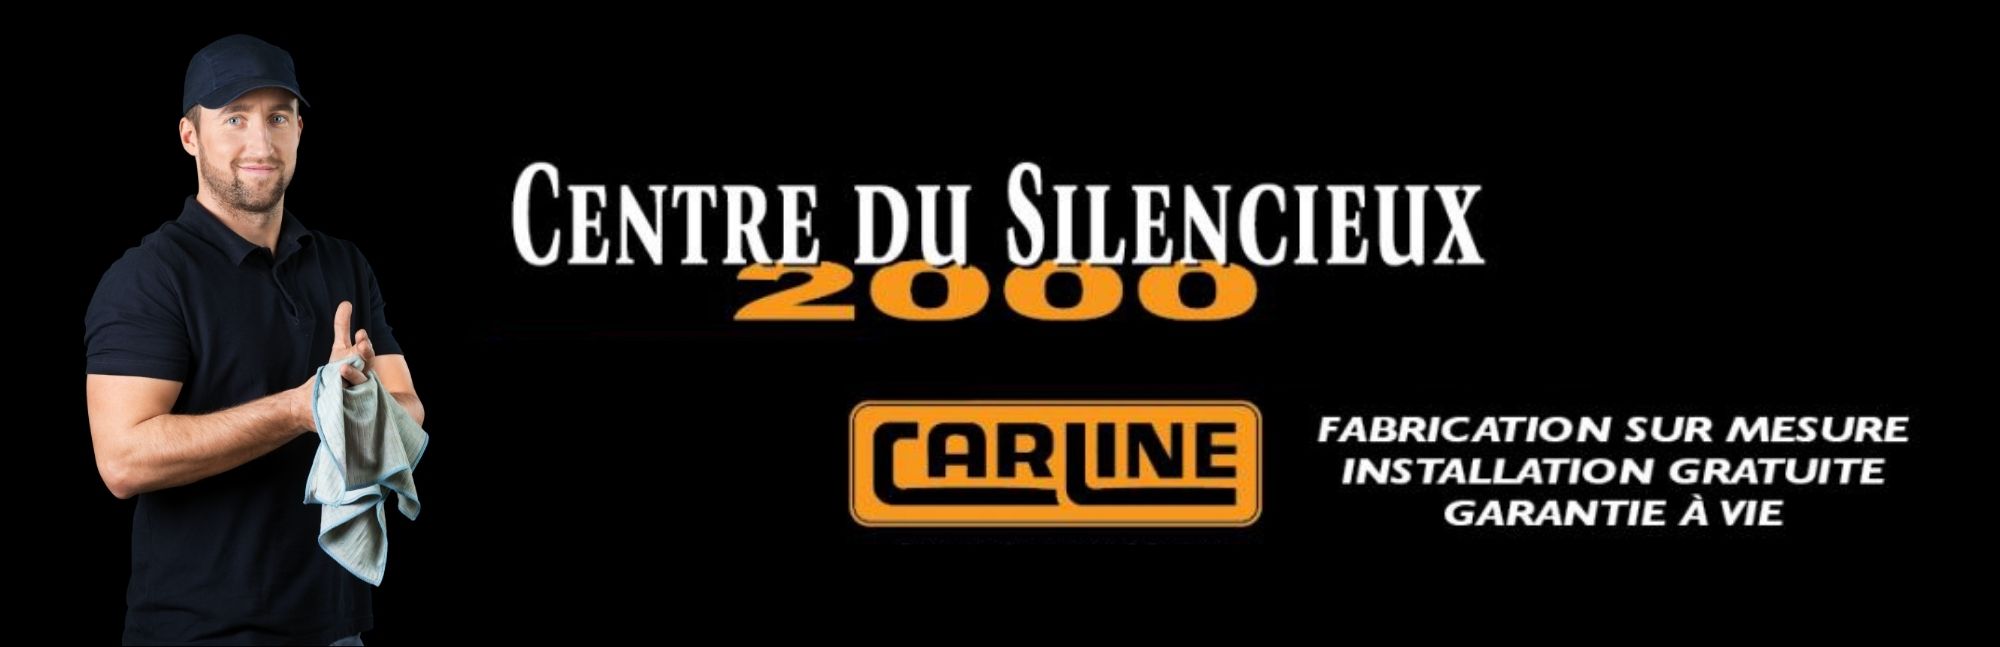 Centre du Silencieux 2000 5